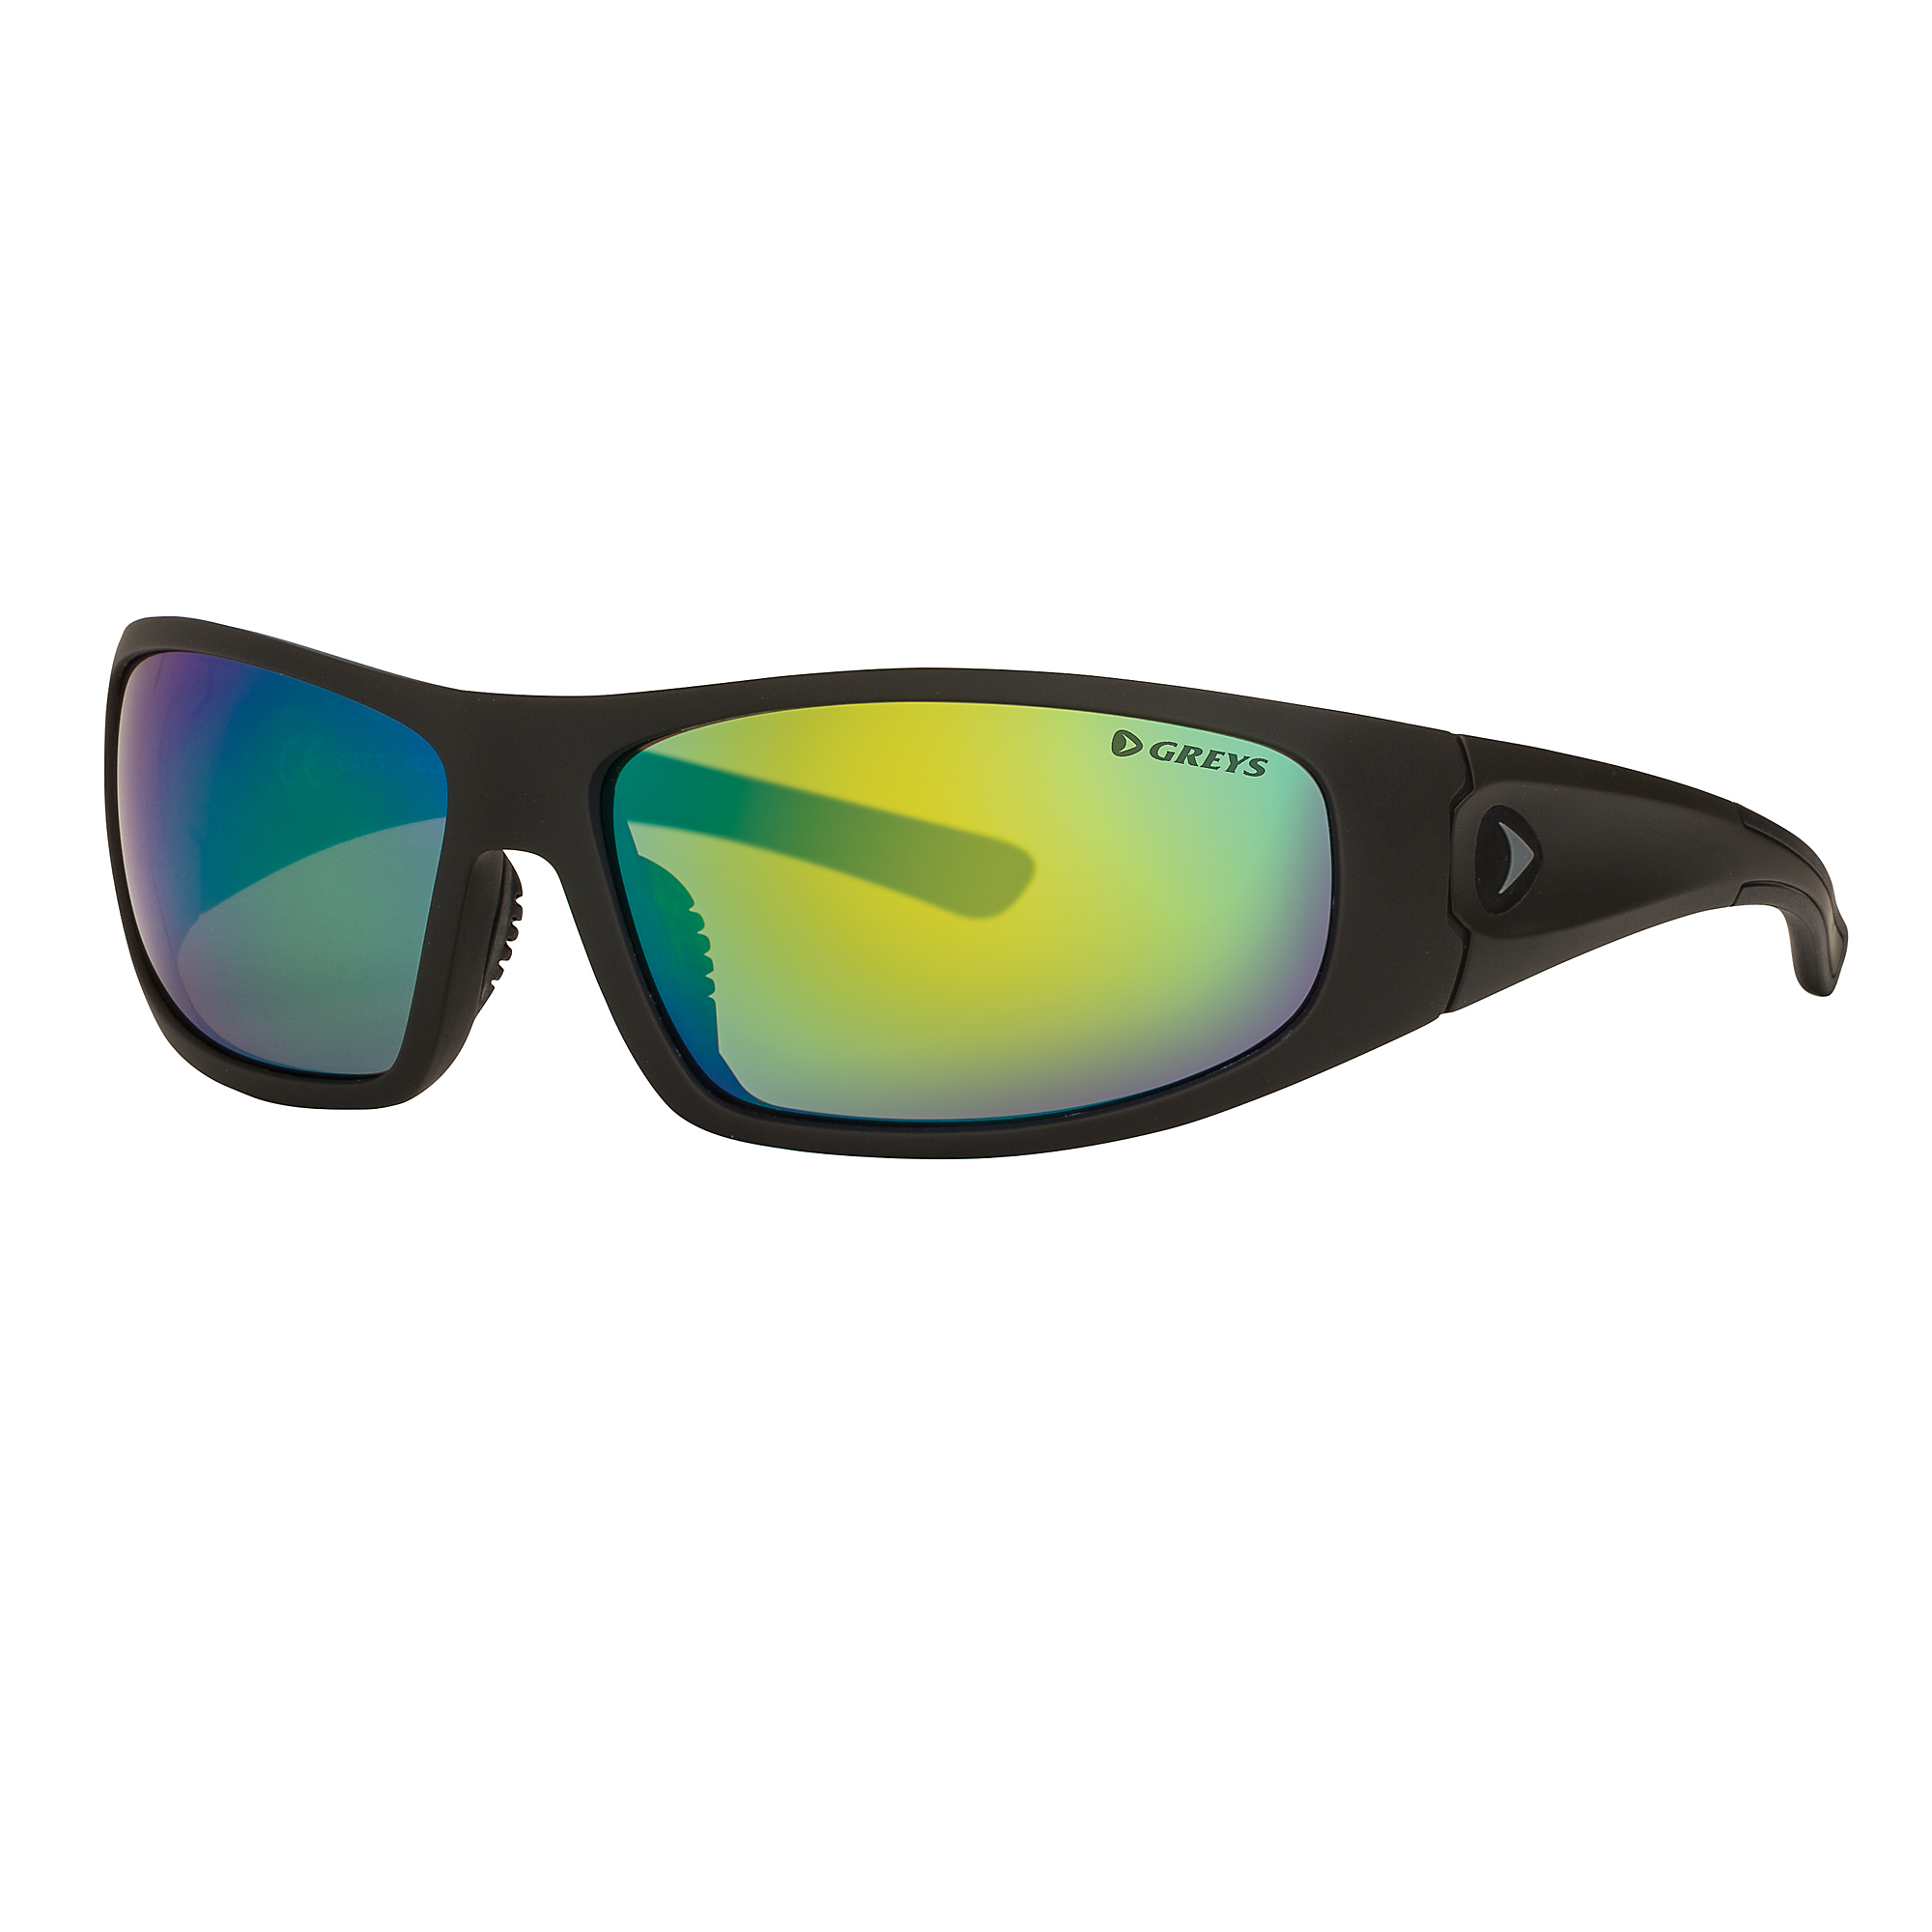 Greys G1 Sunglasses  (Matt Carbon/Green Mirror) 1443833.jpg